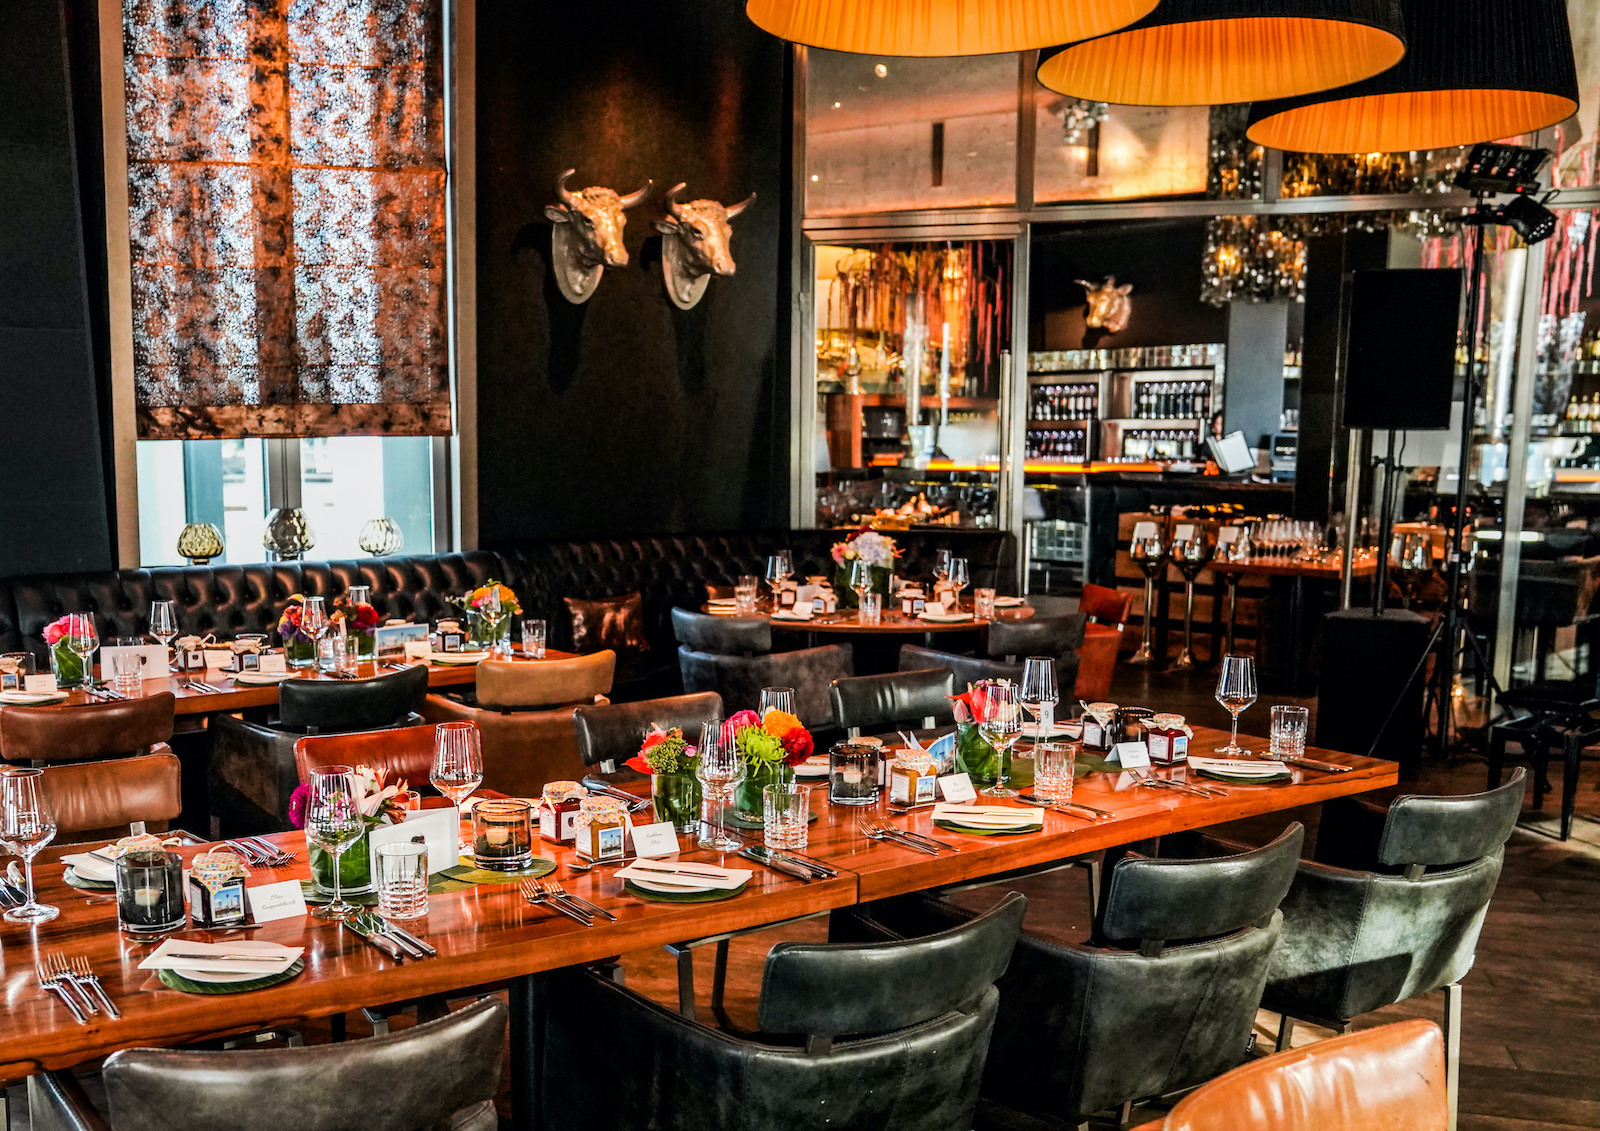 Innenbereich, Alle Tische sind gedeckt für ein Event im Restaurant Rocca 800°C im Düsseldorfer Medienhafen